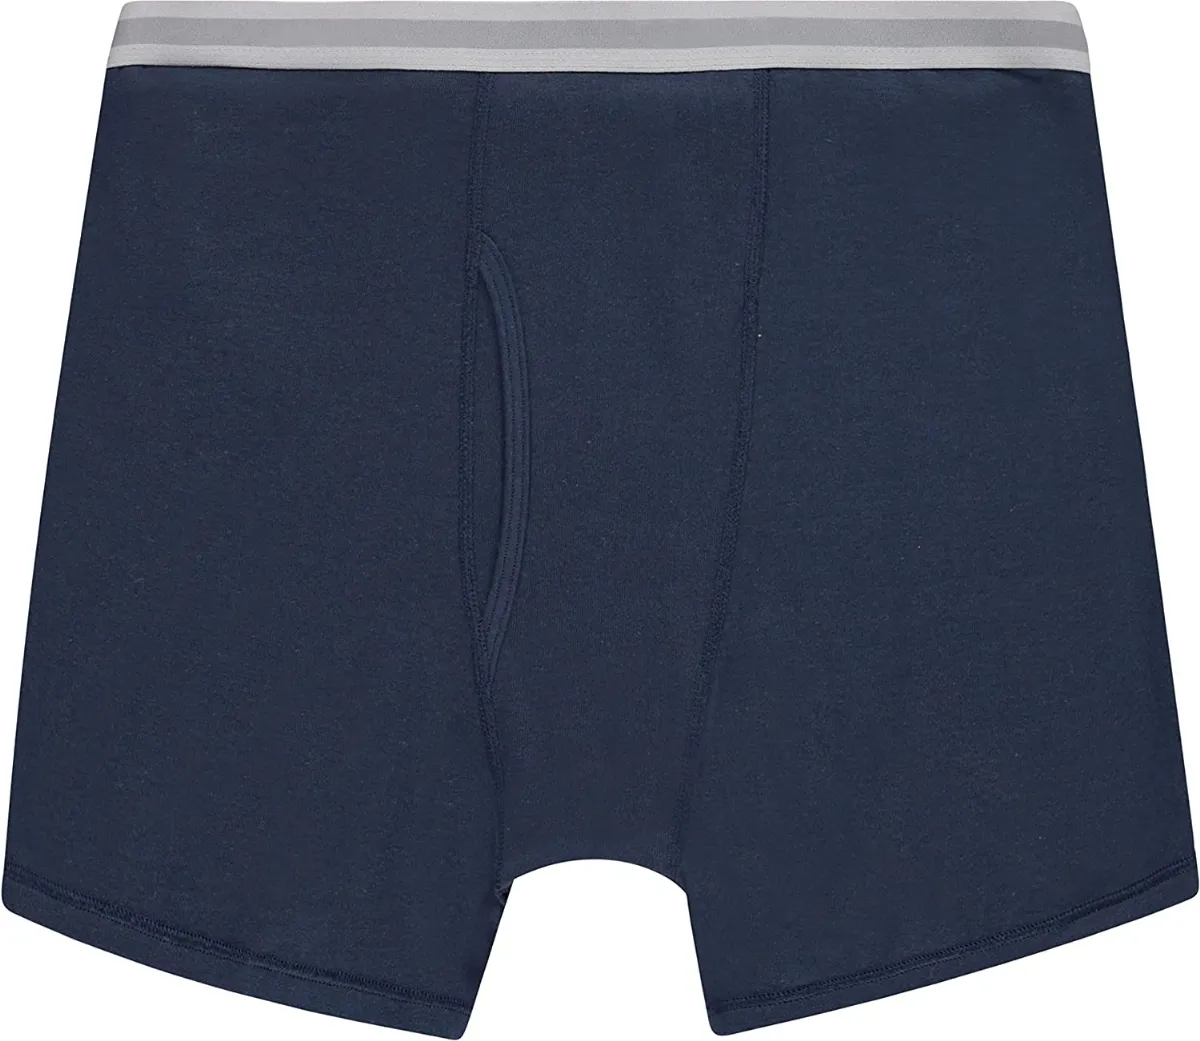 48 Pieces Men's Cotton Underwear Boxer Briefs In Assorted Colors Size ...